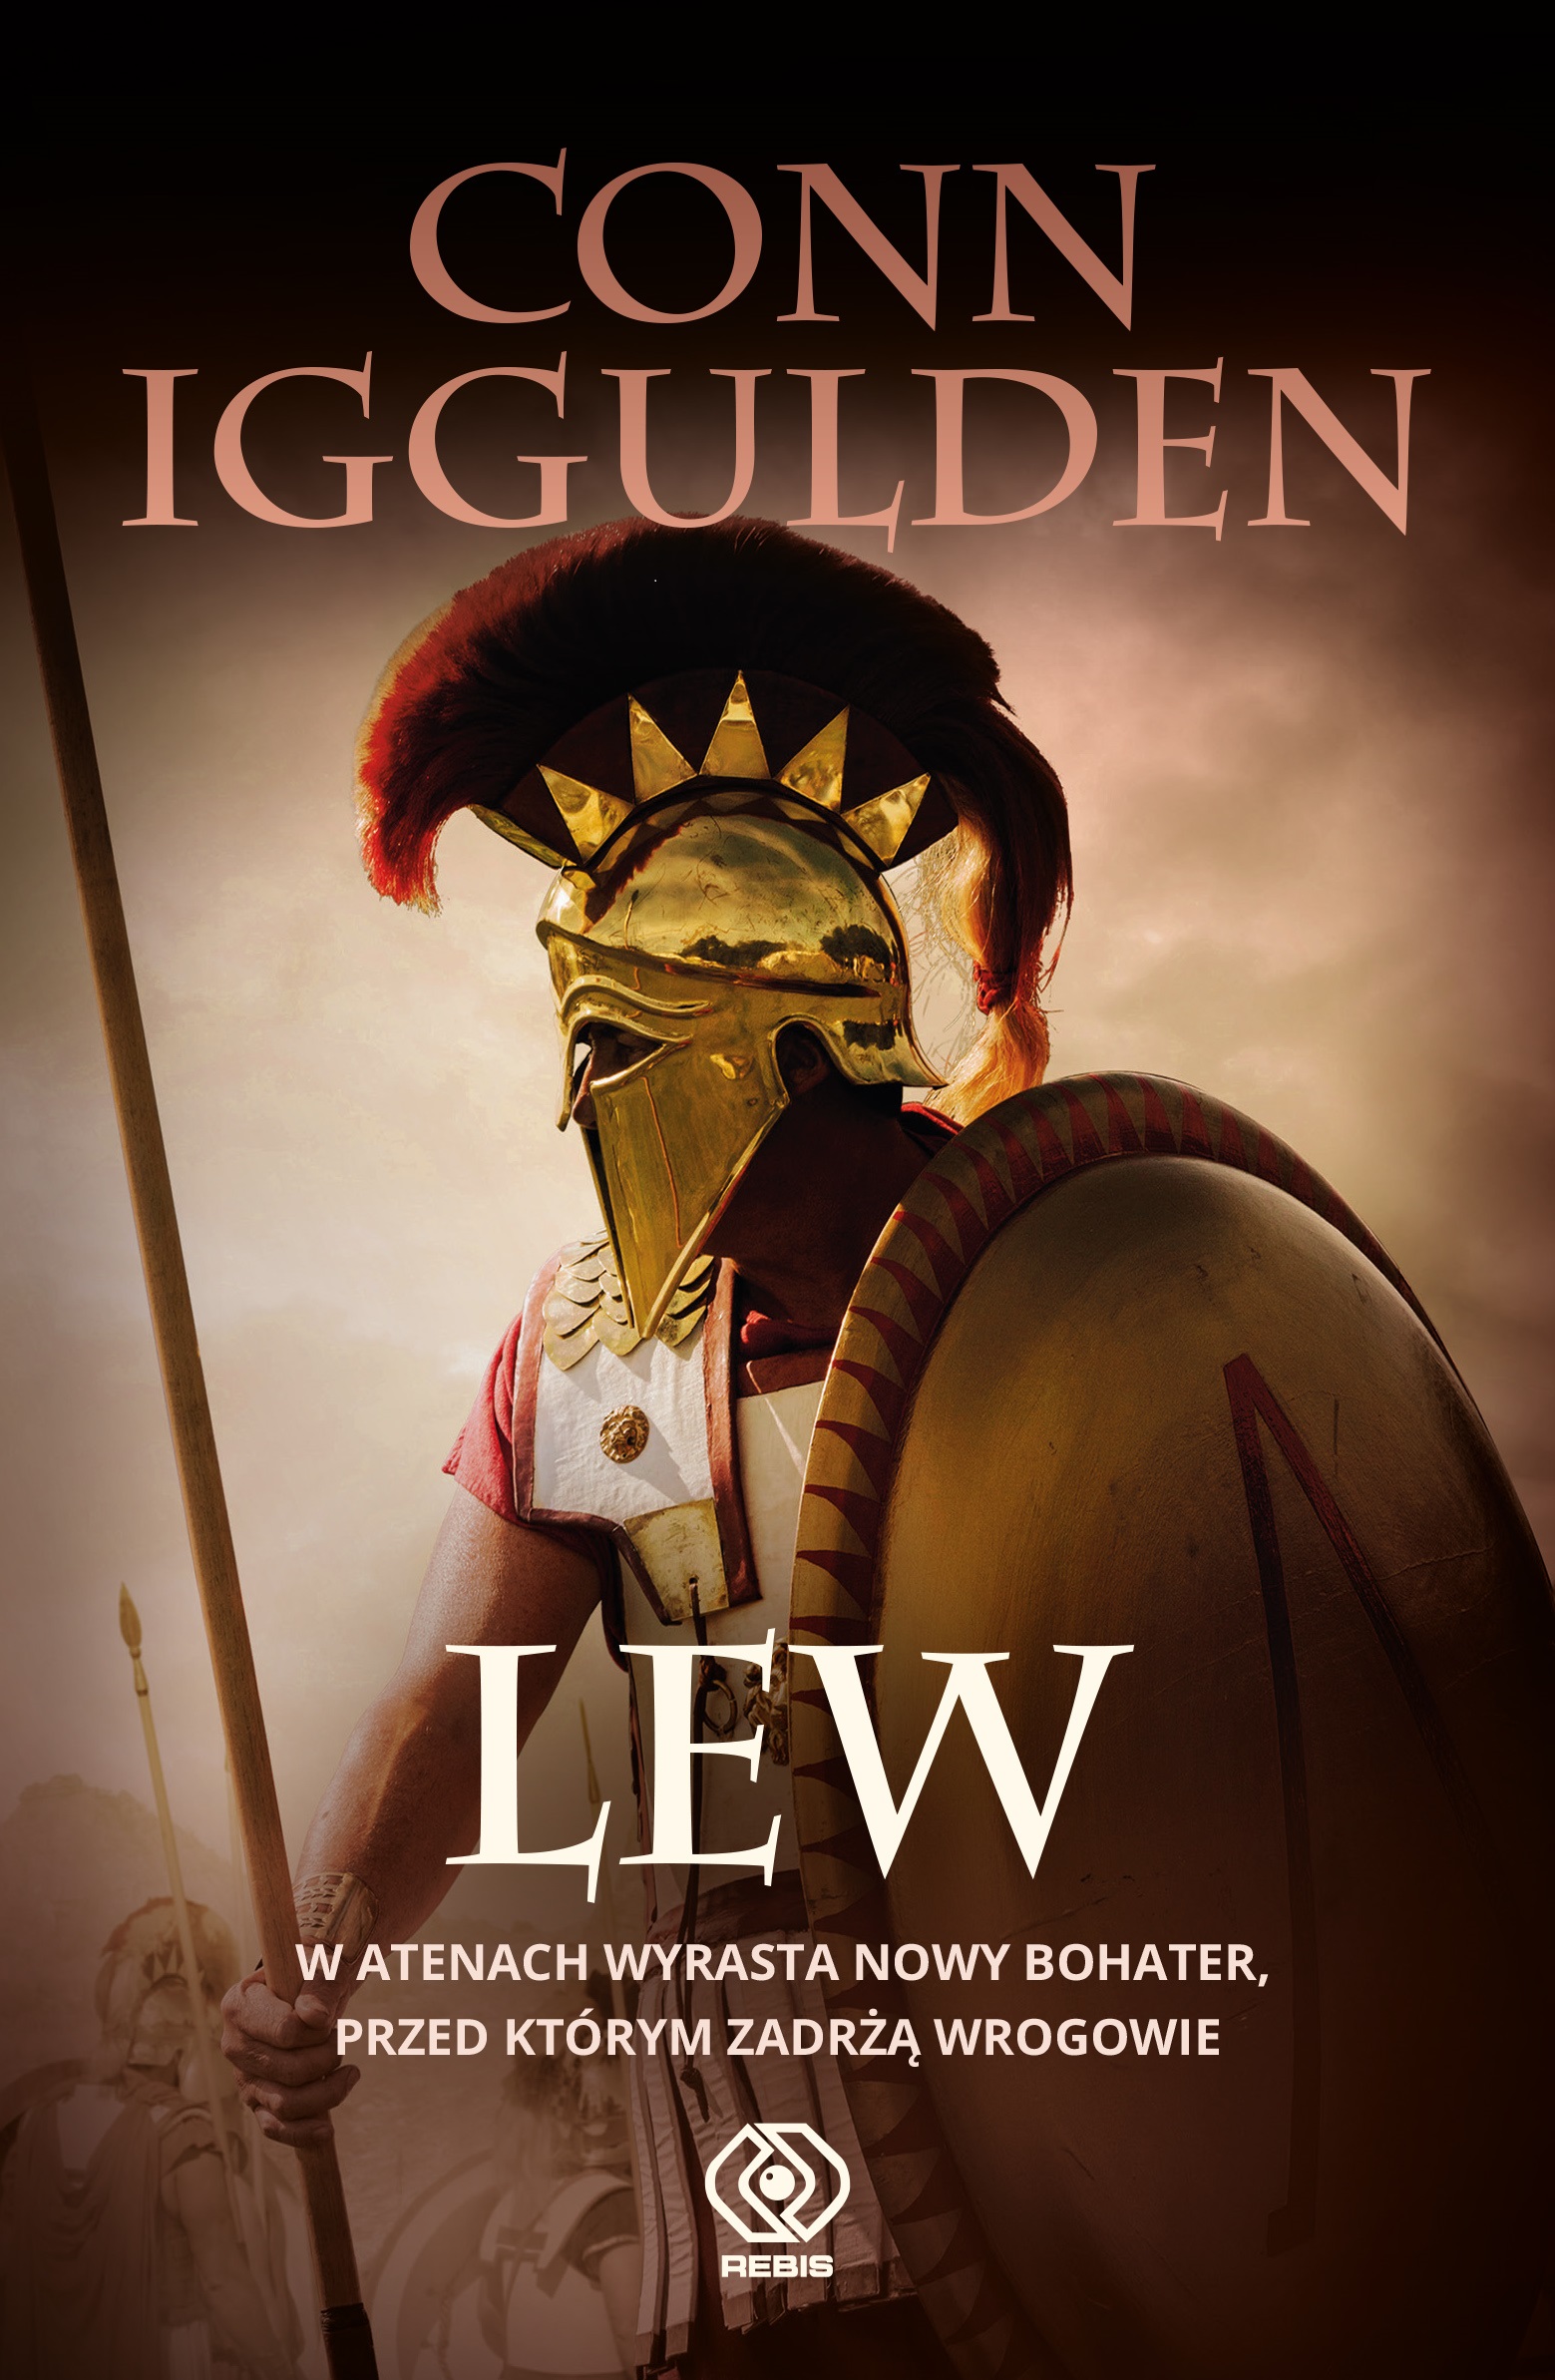  13 lutego trafi na rynek powieść Conna Igguldena pt. "Lew".